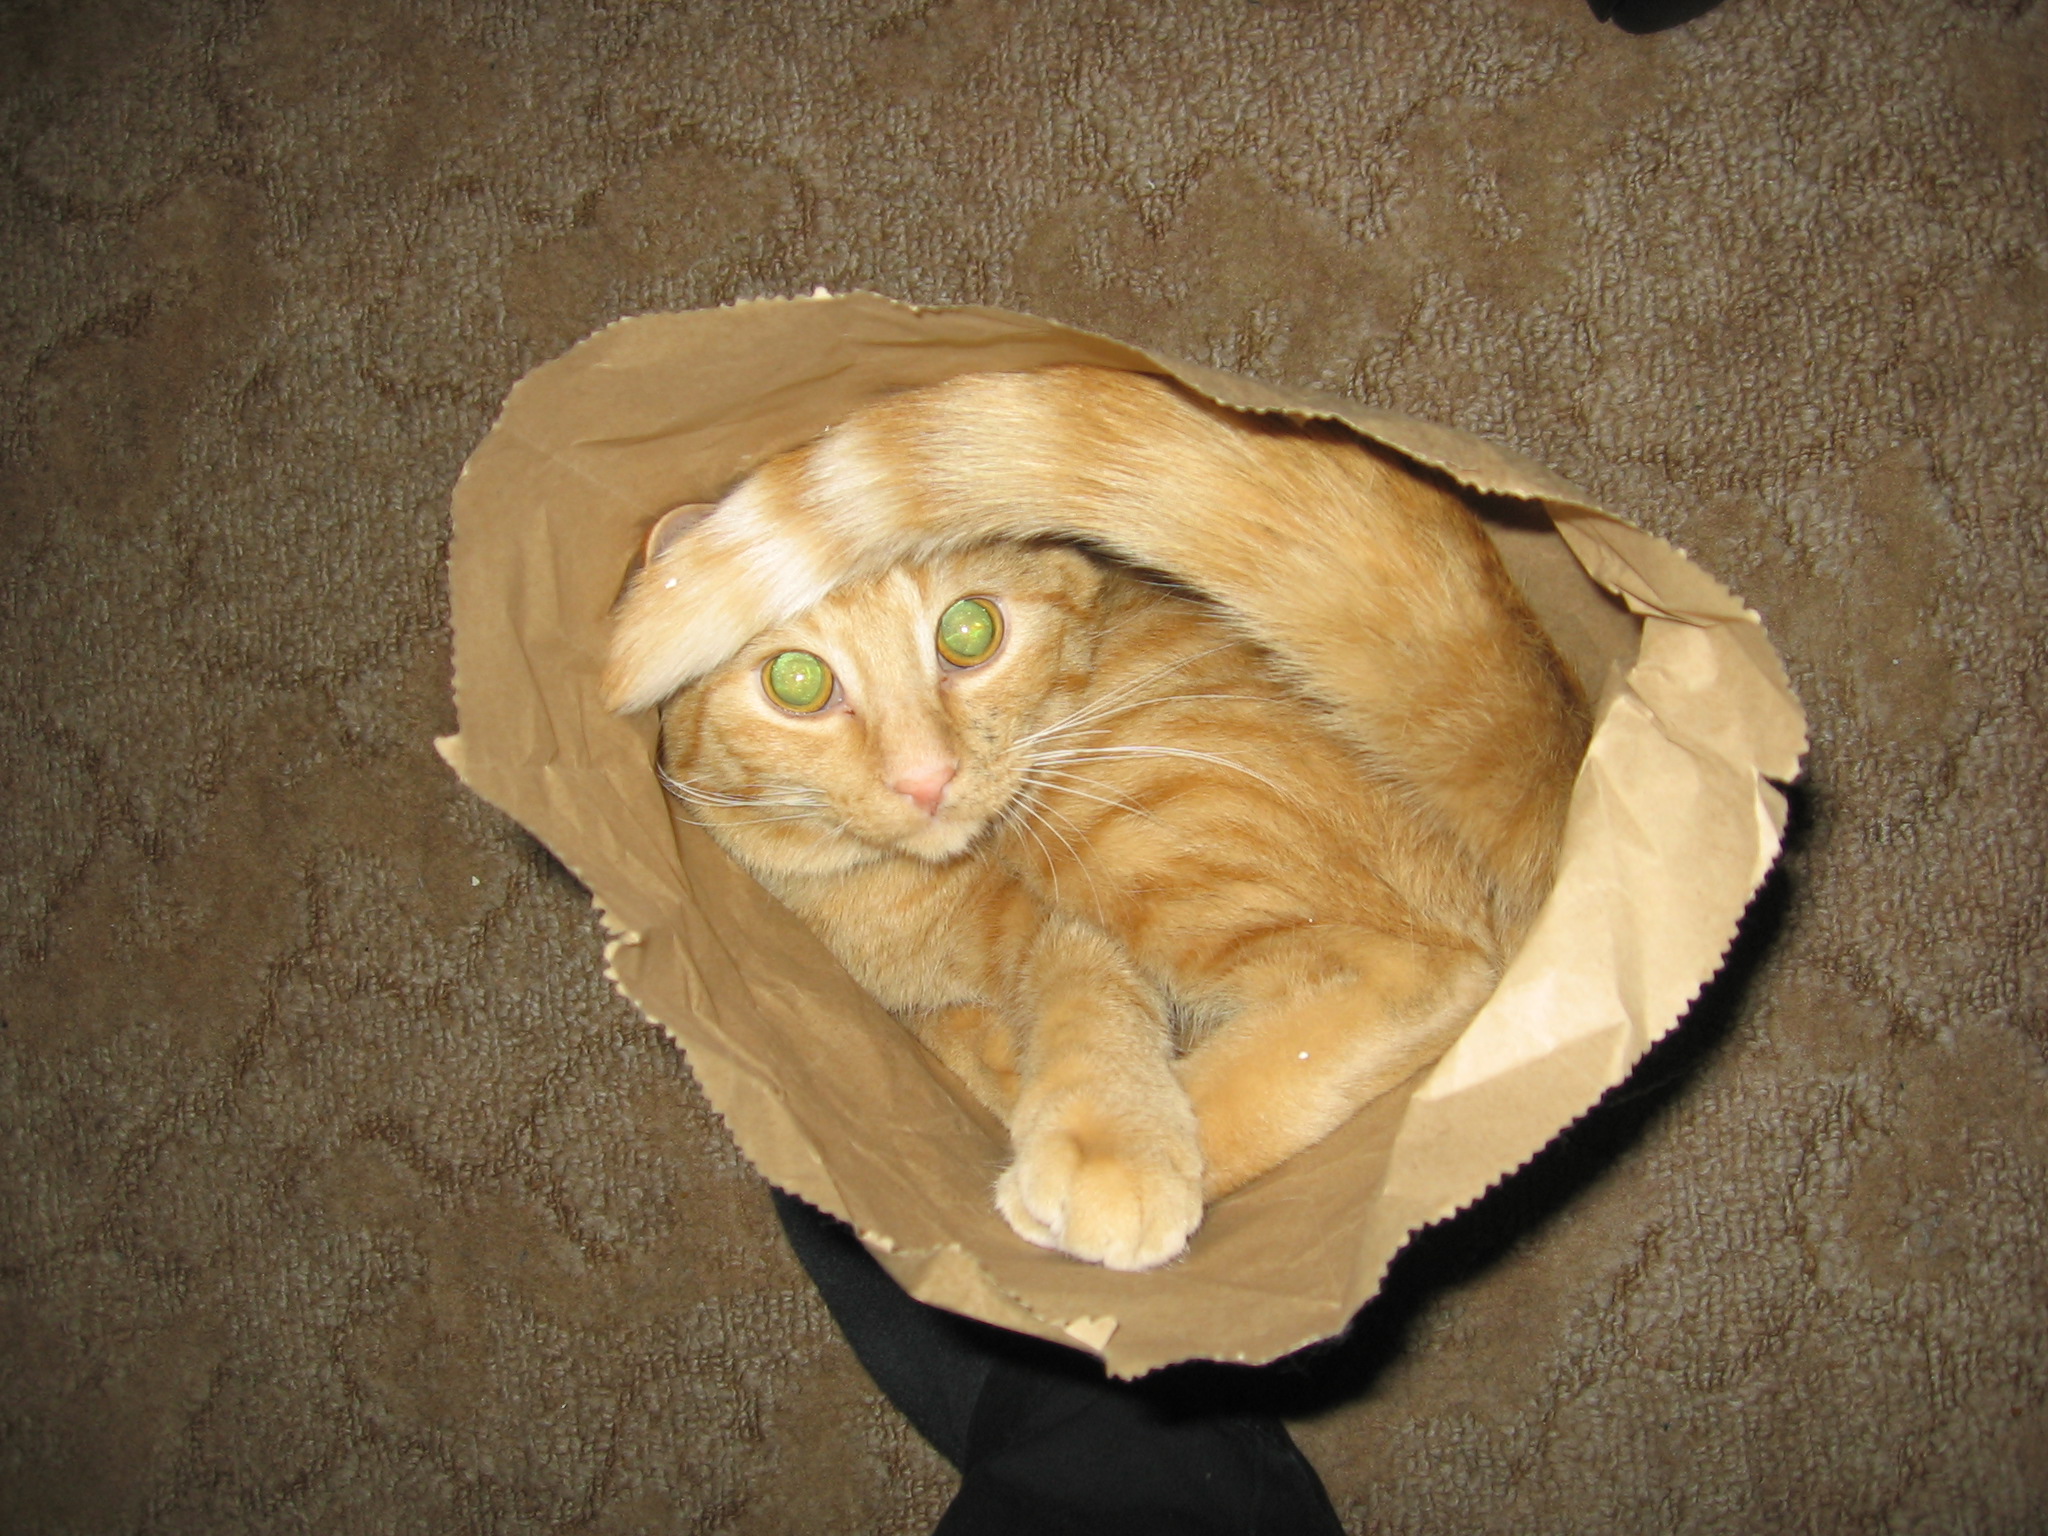 Jack inside a paper bag sitting on the carpet.